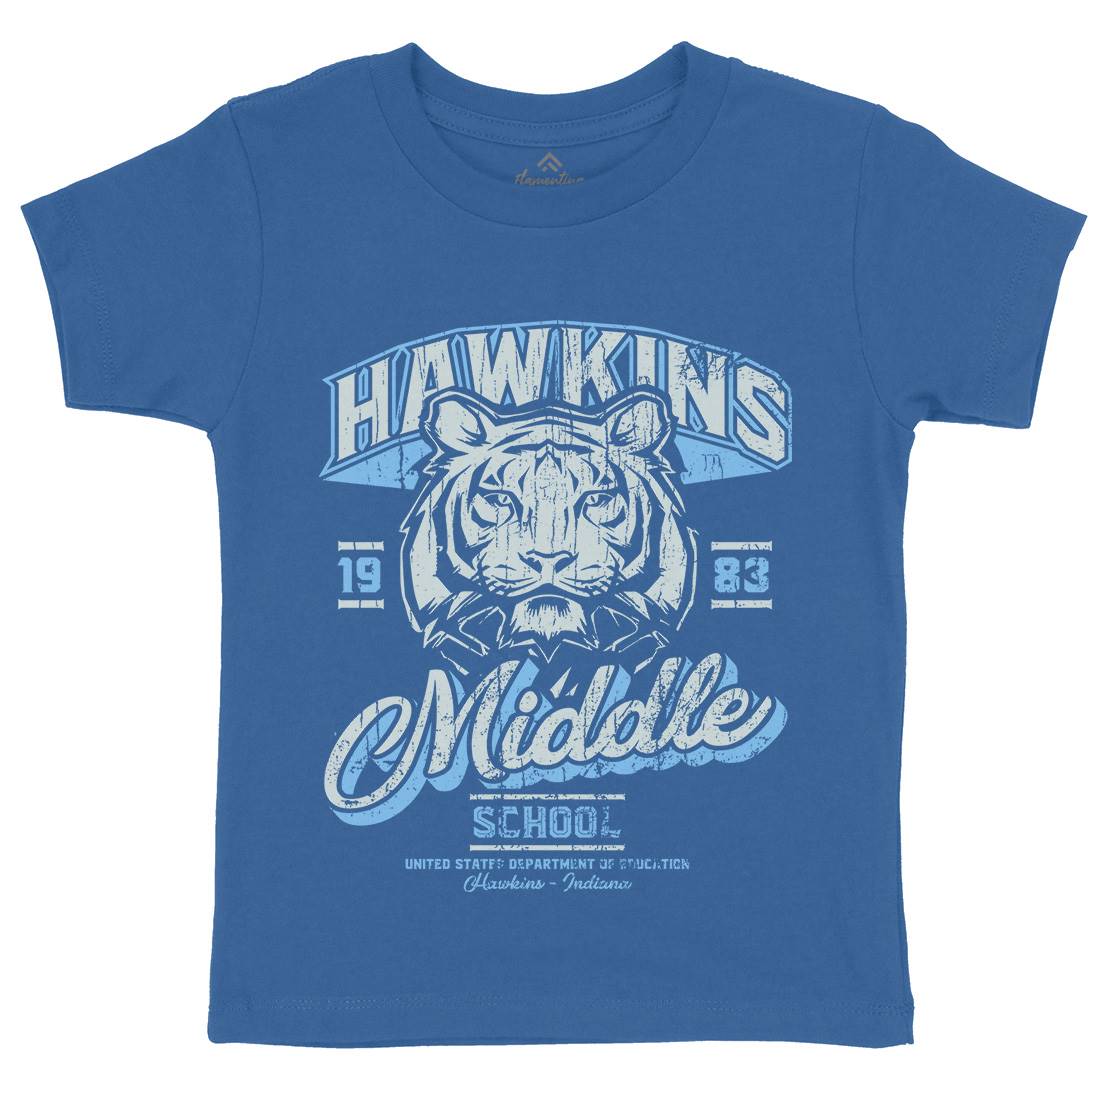 Hawkins School Kids Crew Neck T-Shirt Horror D144